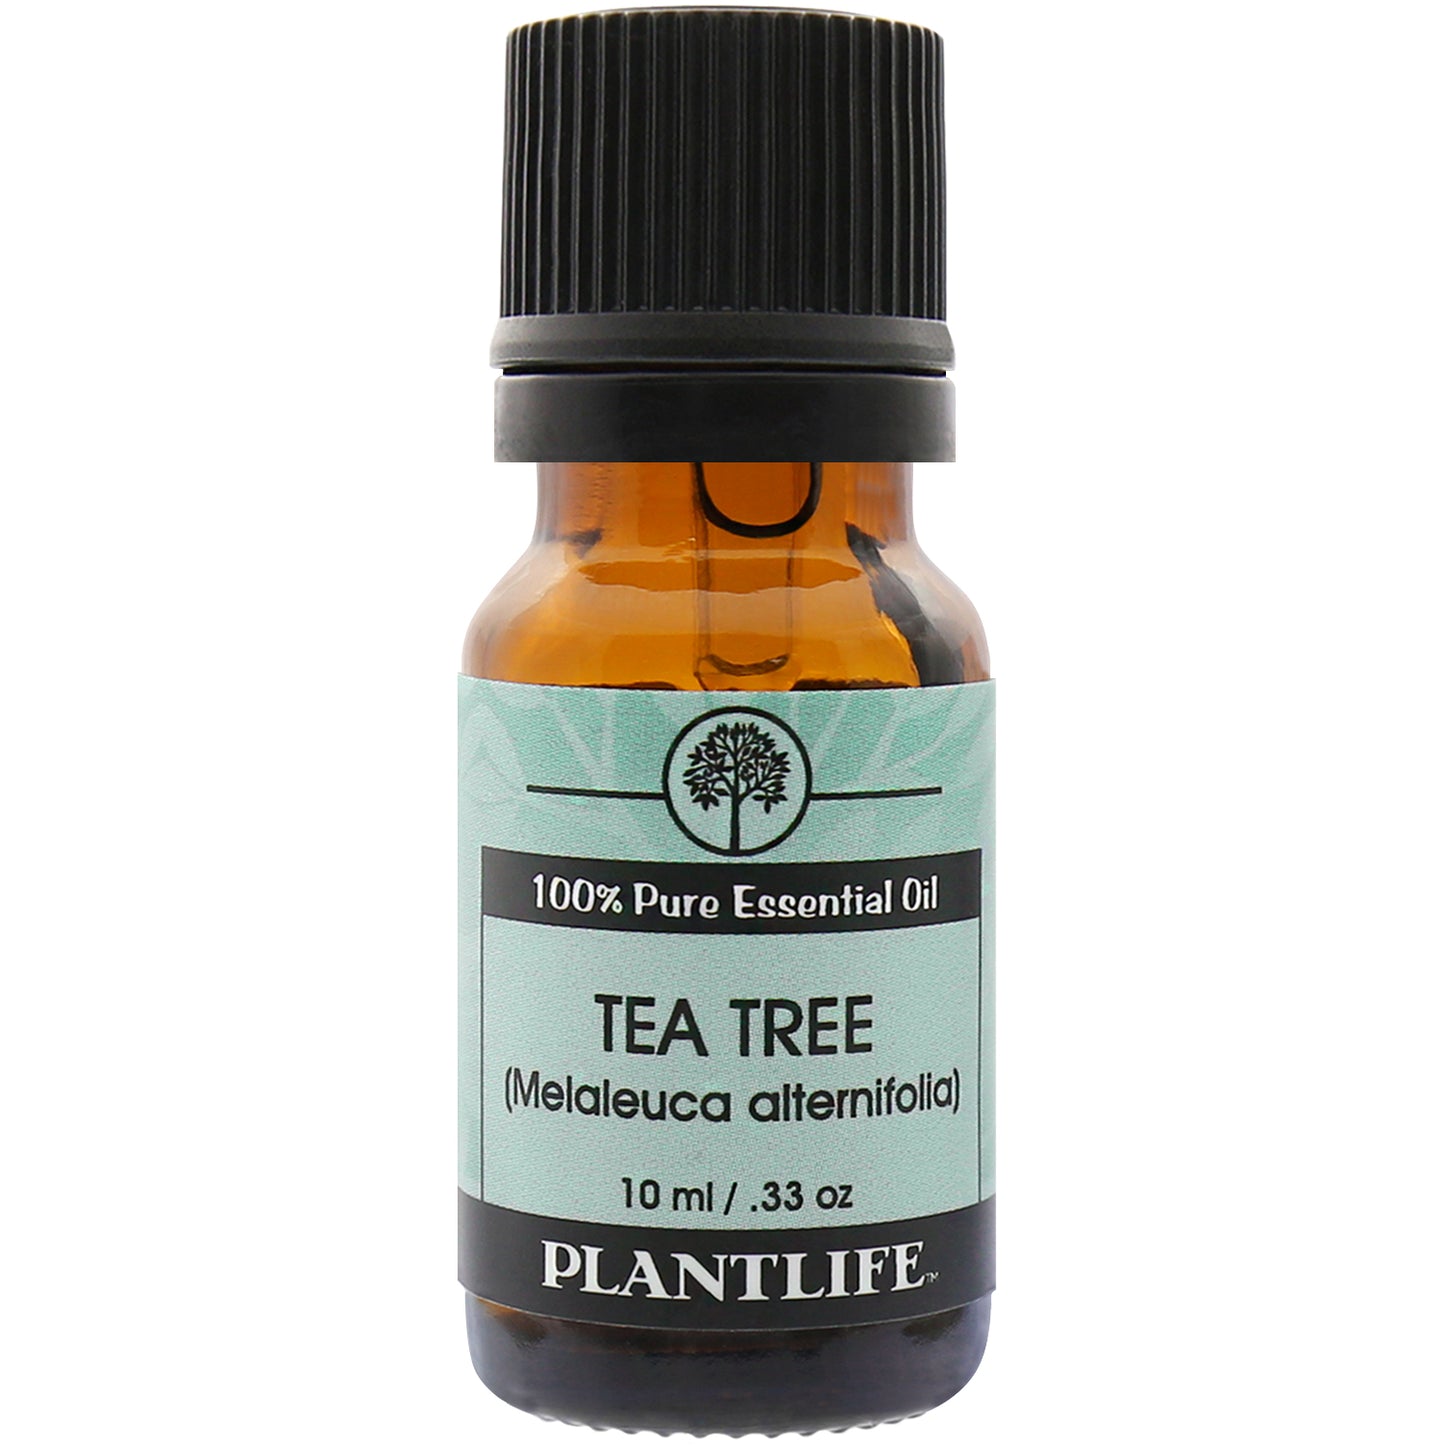 Tea Tree 100% Pure Essential Oil